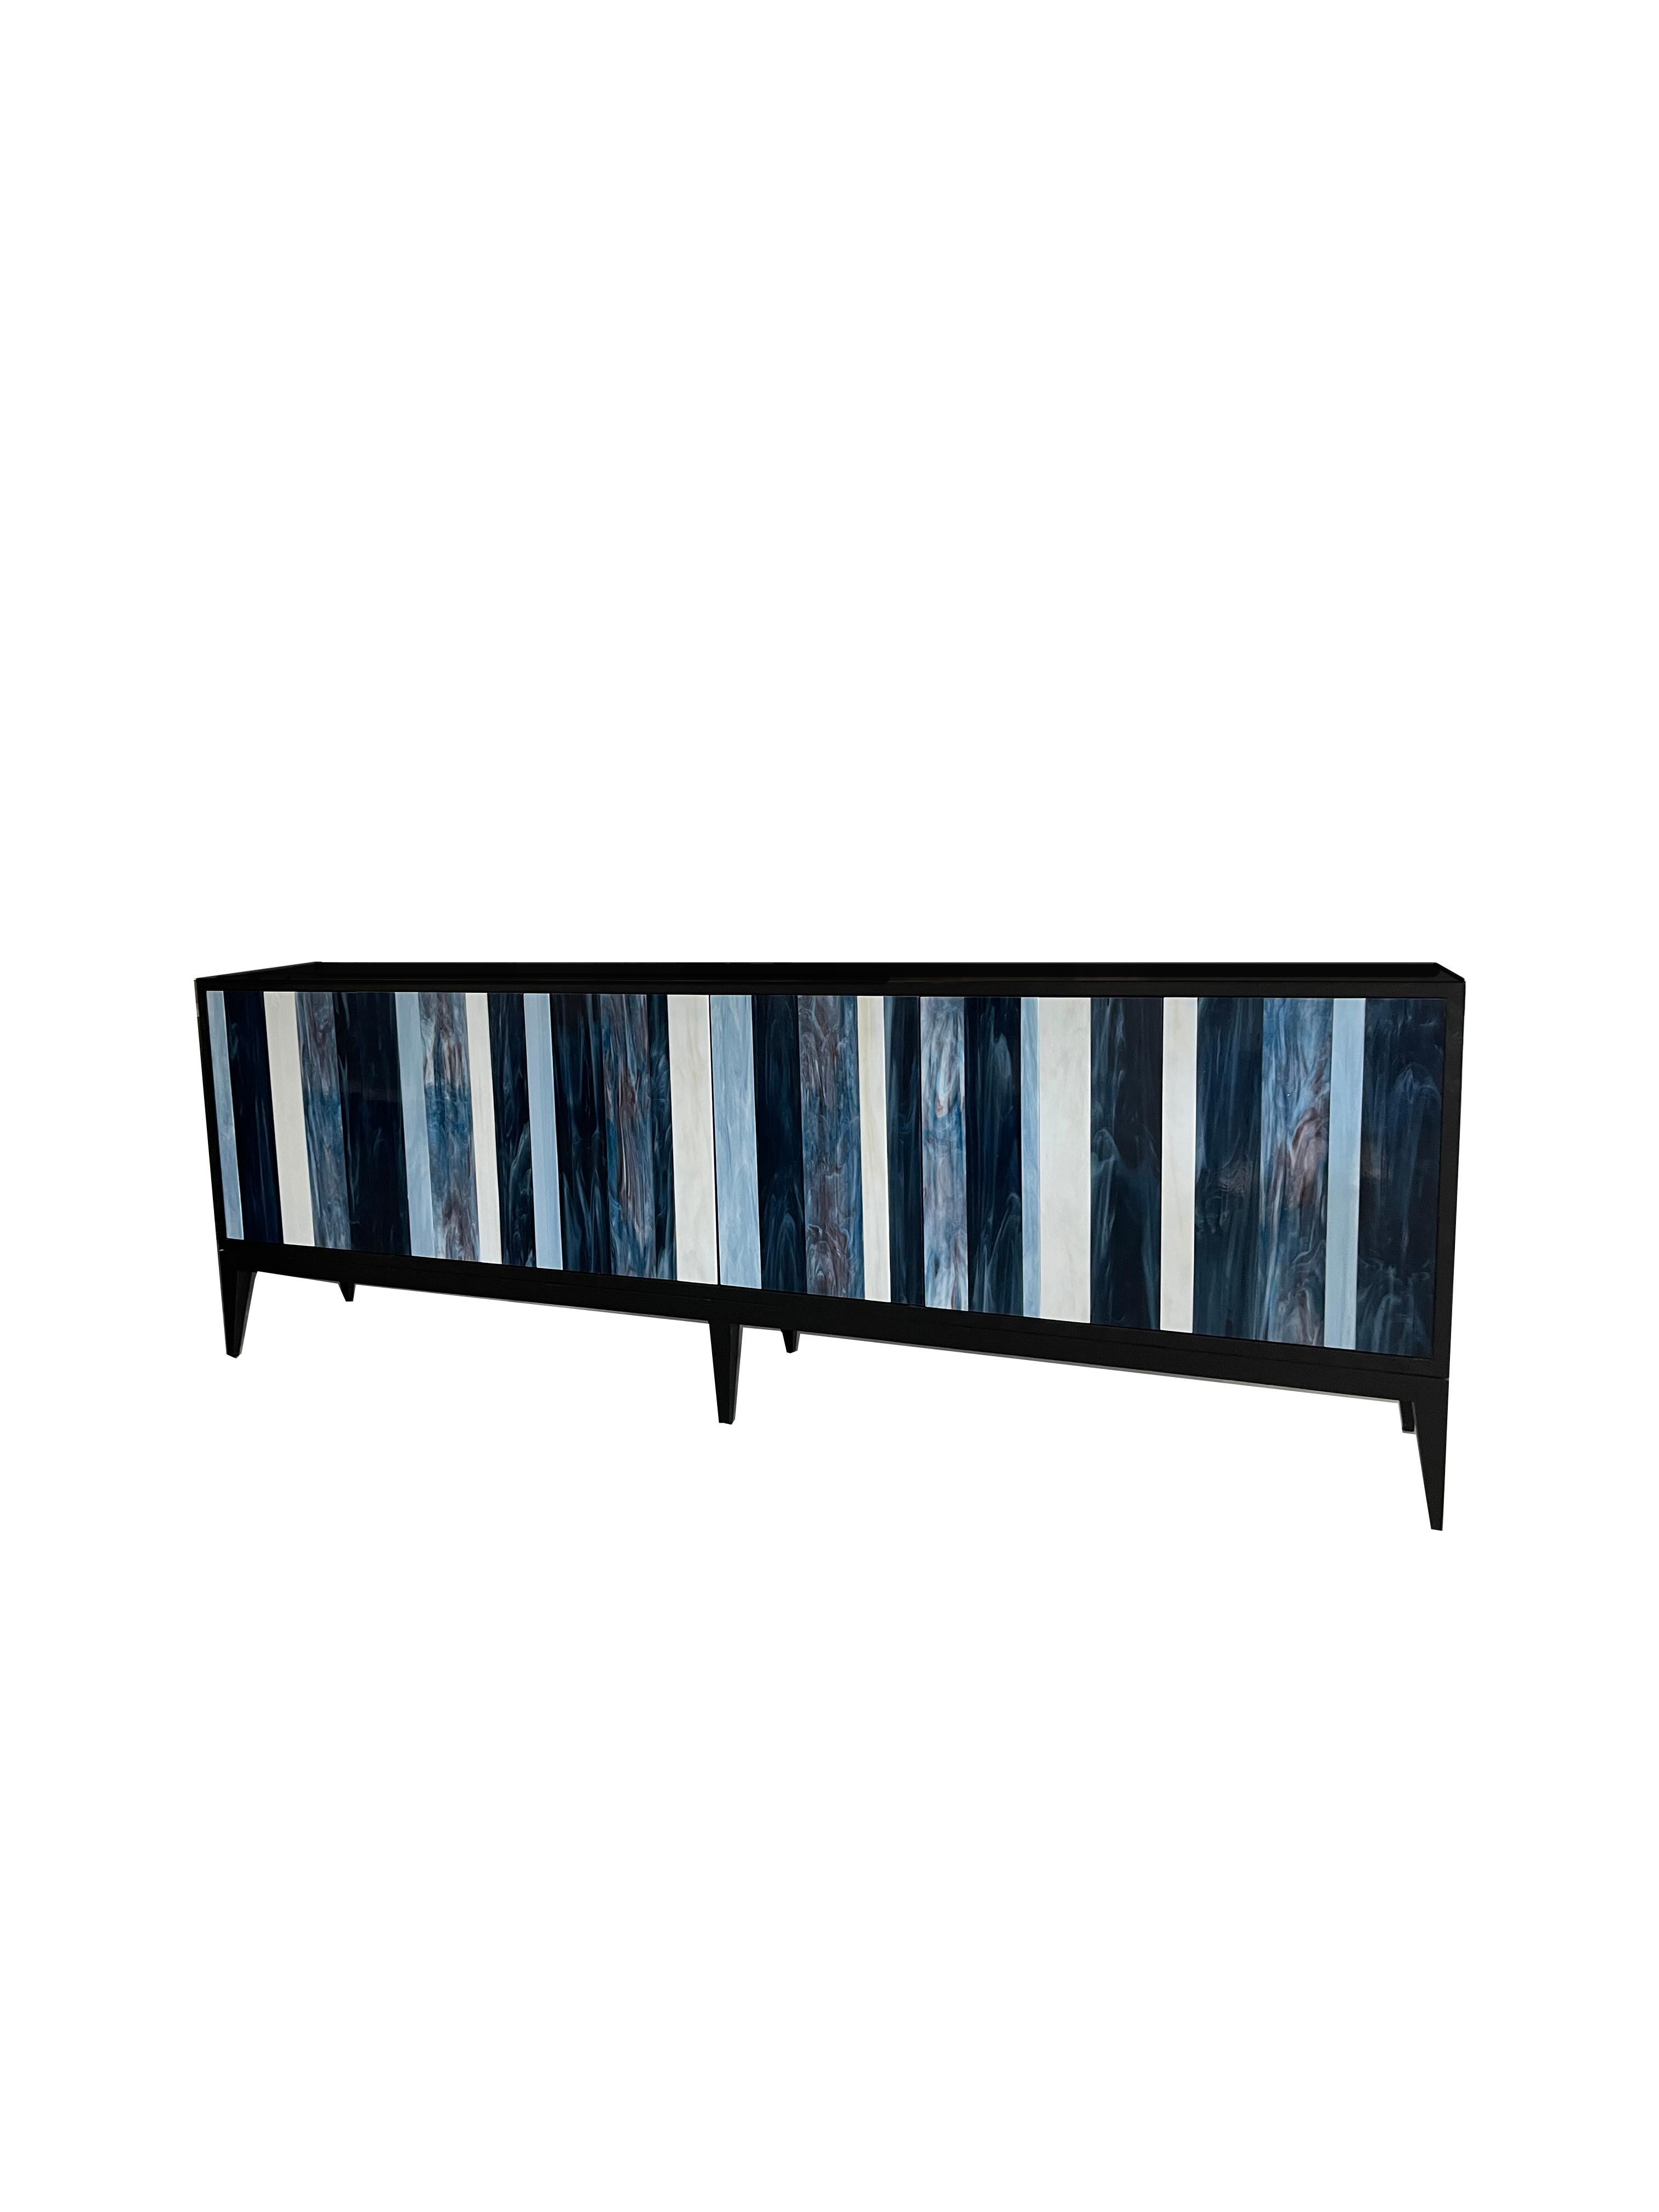 Das Linea Milano Buffet von Ercole Home hat eine 6-türige Front und ist mit dunklem Wenge-Holz verkleidet.
Handgeschliffene Glasstreifen in Elfenbein, Französisch-Blau, Elektro-Blau und Wolkig-Note zieren die Oberfläche der Türen.
An jeder Tür